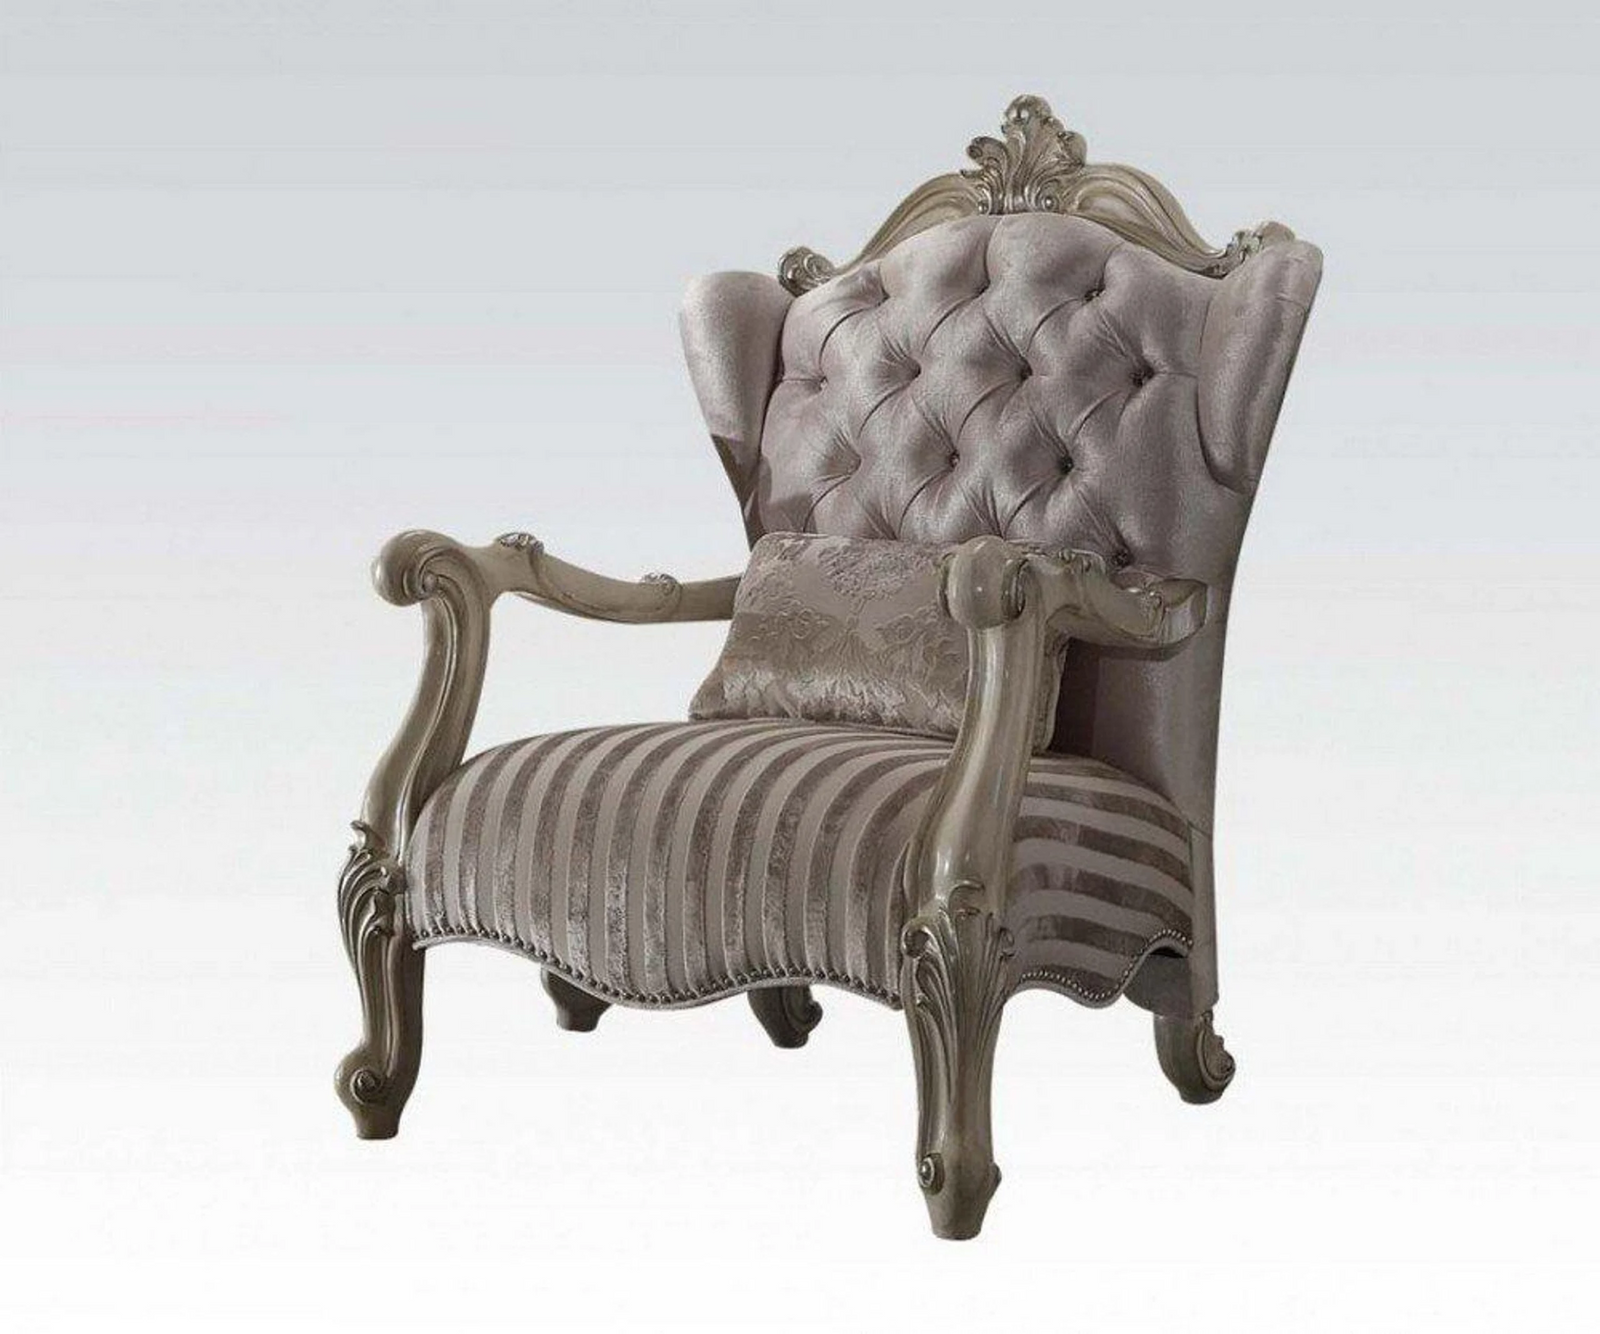 Golden Brown Velvet Chair With Pillow - 34" x 33" x 48"